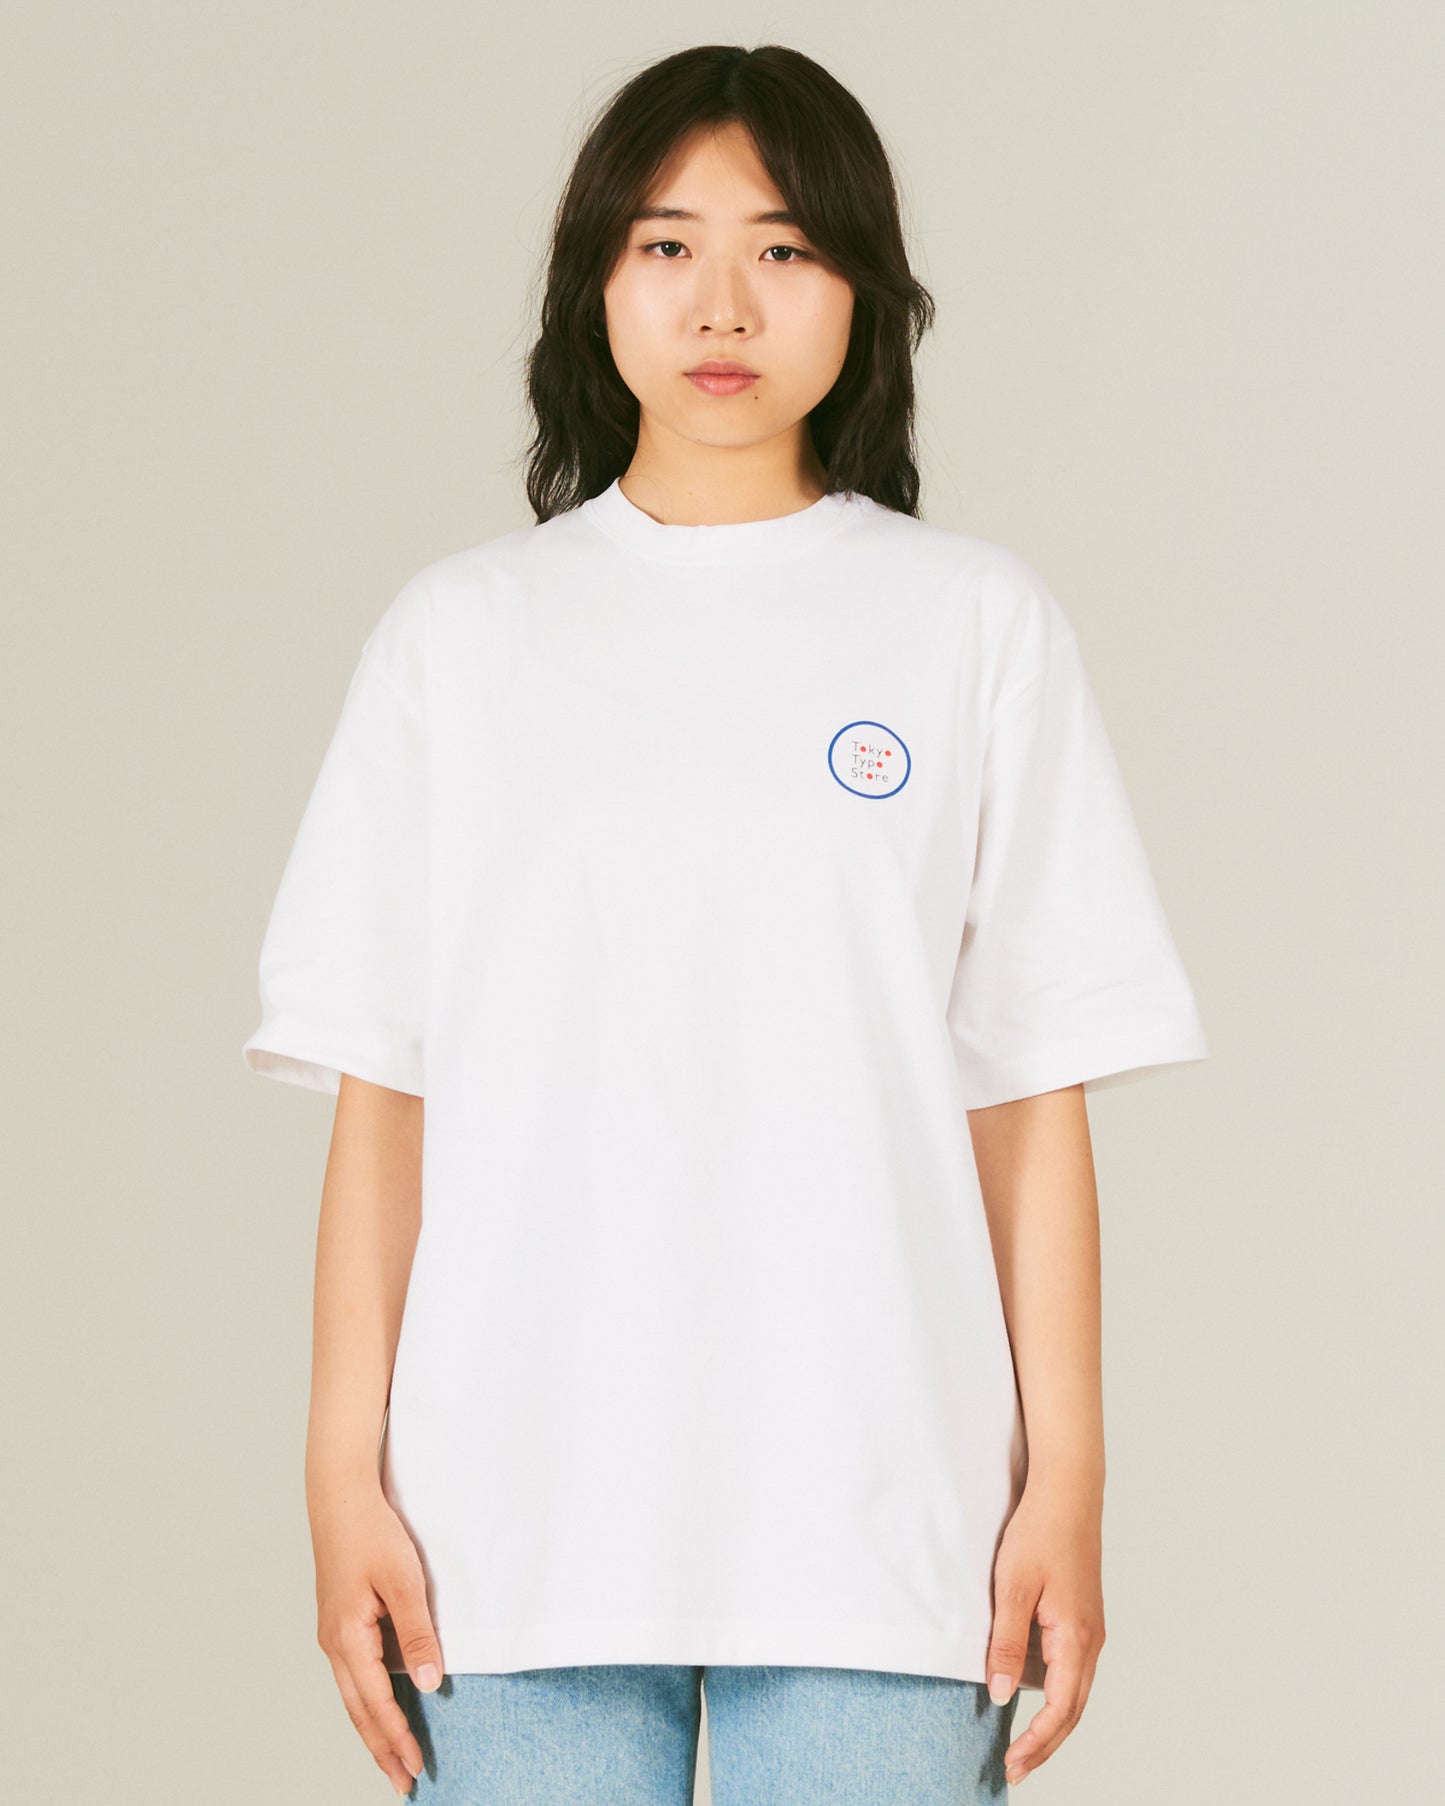 萌 / Moe T-Shirt BACK PRINT